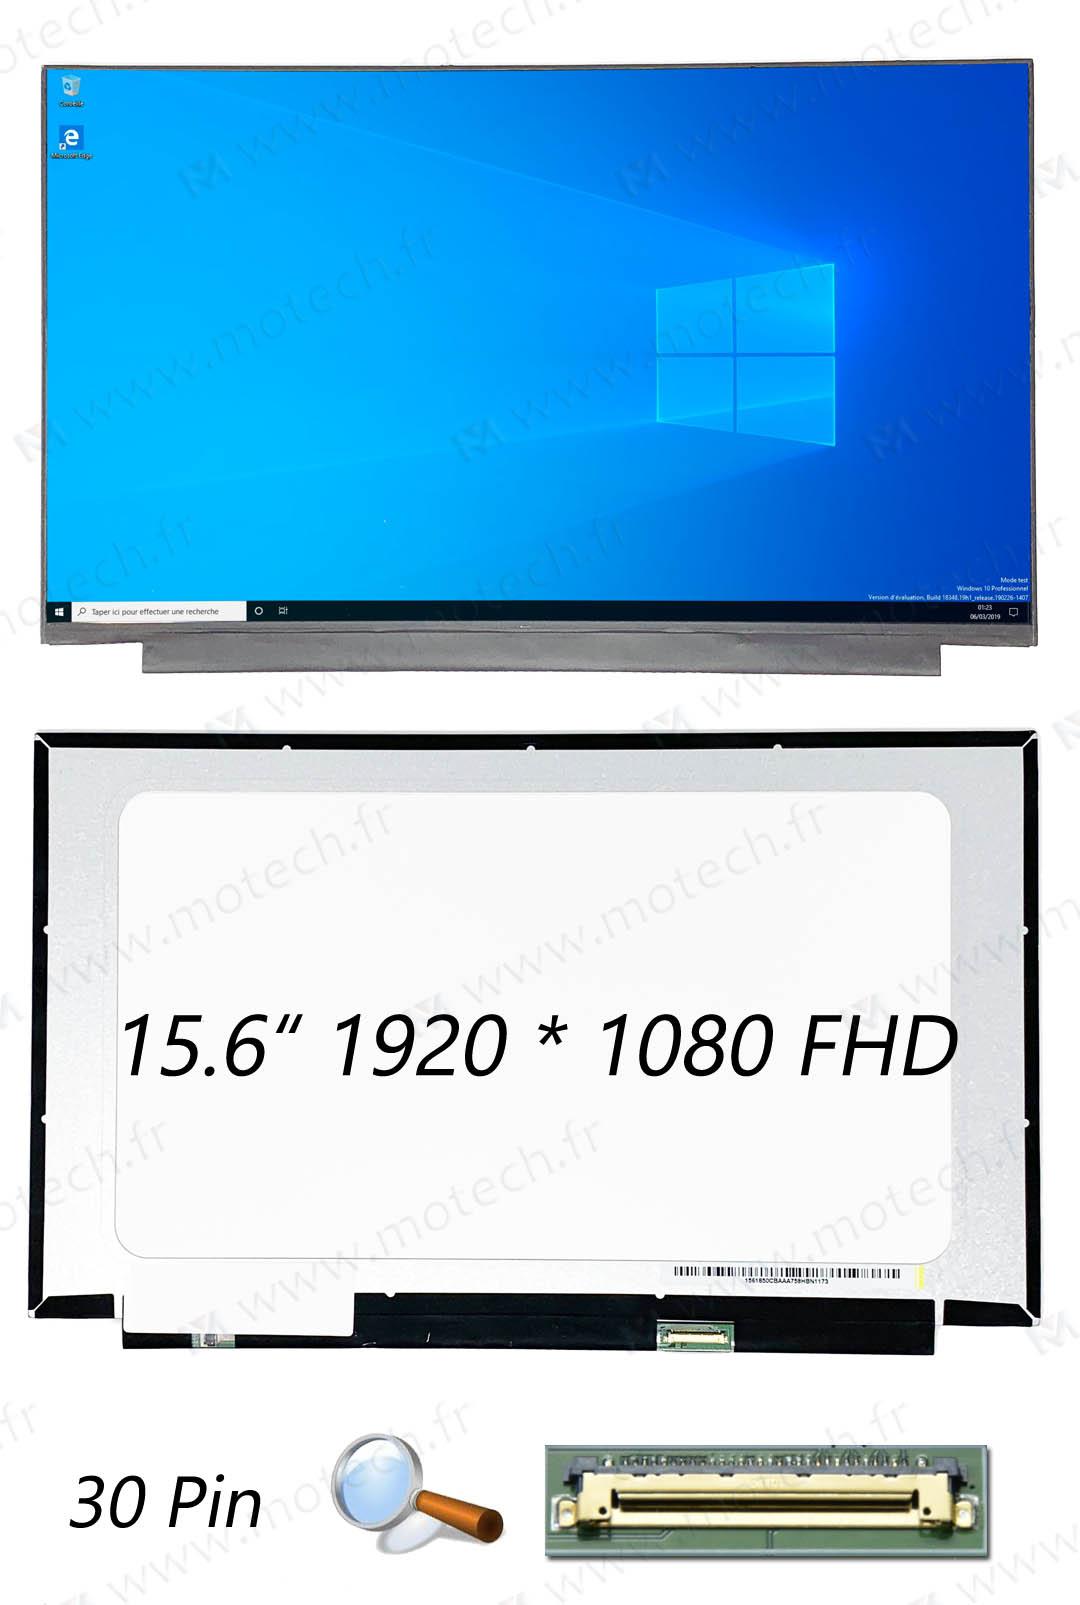 Asus VivoBook S15 S530 Dalle, Asus VivoBook S15 S530 ecran, Asus VivoBook S15 S530 screen, Asus VivoBook S15 S530 afficheur, Asus VivoBook S15 S530 dalle ecran, Asus VivoBook S15 S530 LCD,